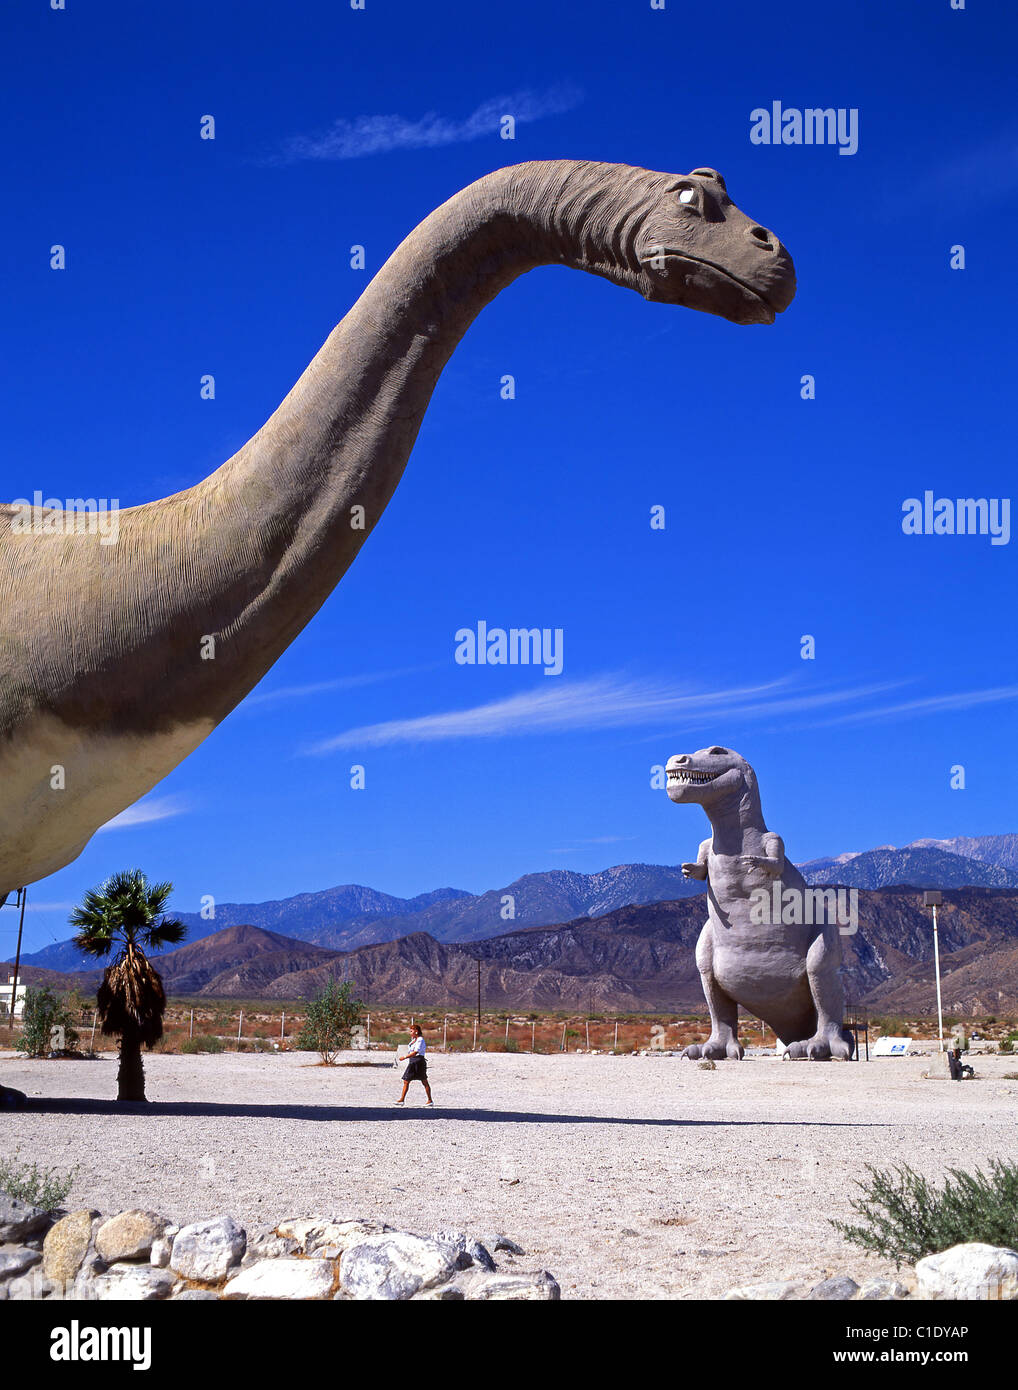 Cabazon Dinosaures, Seminole Drive, Cabazon, près de Palm Springs, Californie, États-Unis d'Amérique Banque D'Images